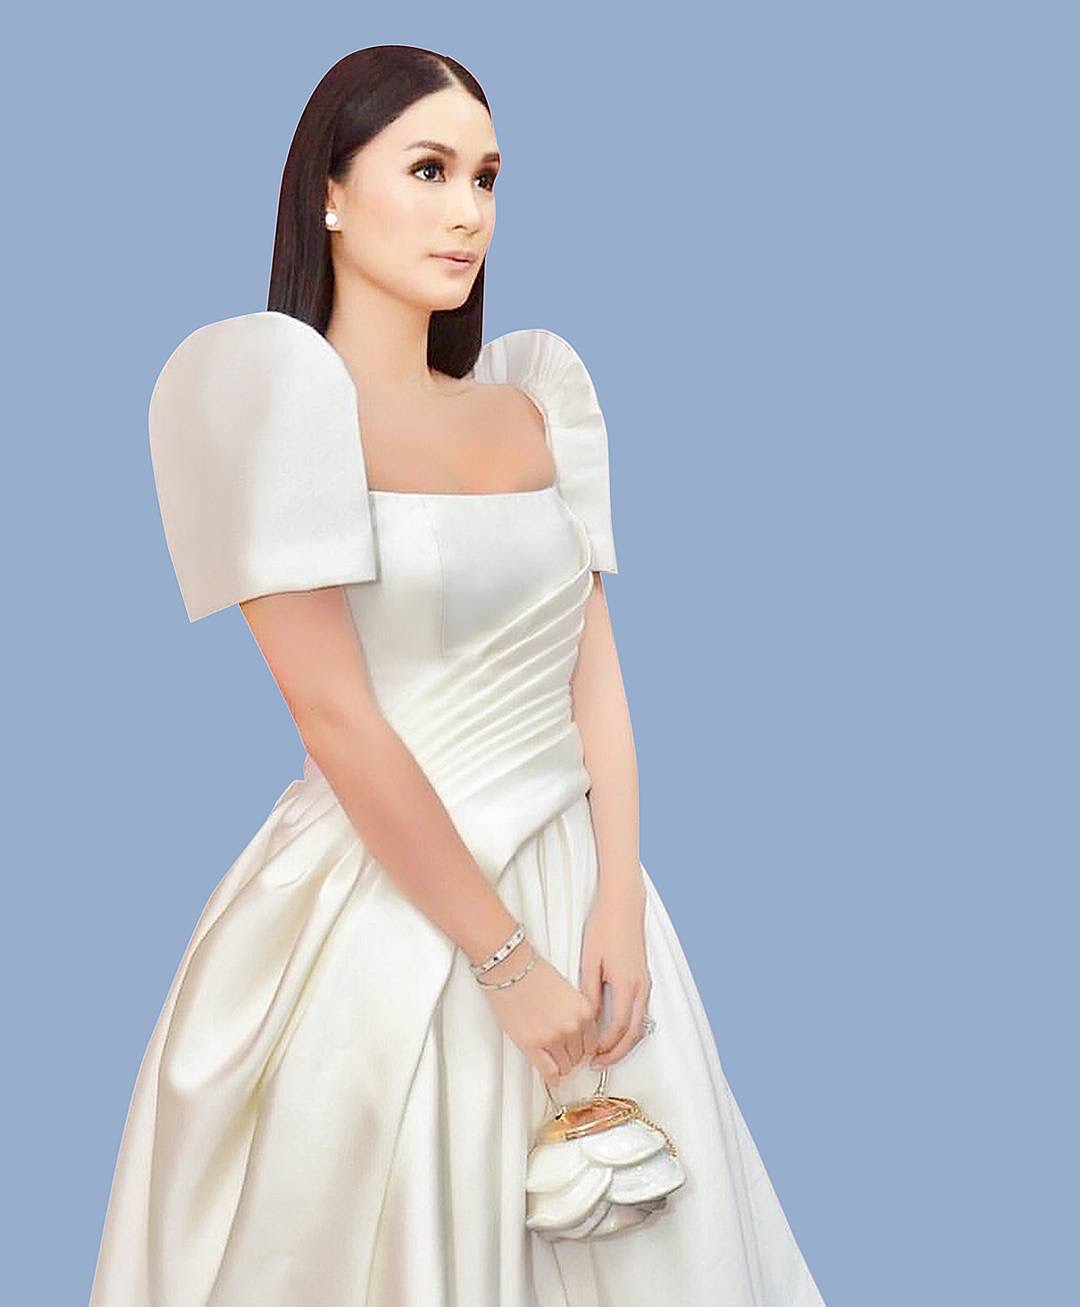 white modern filipiniana dress